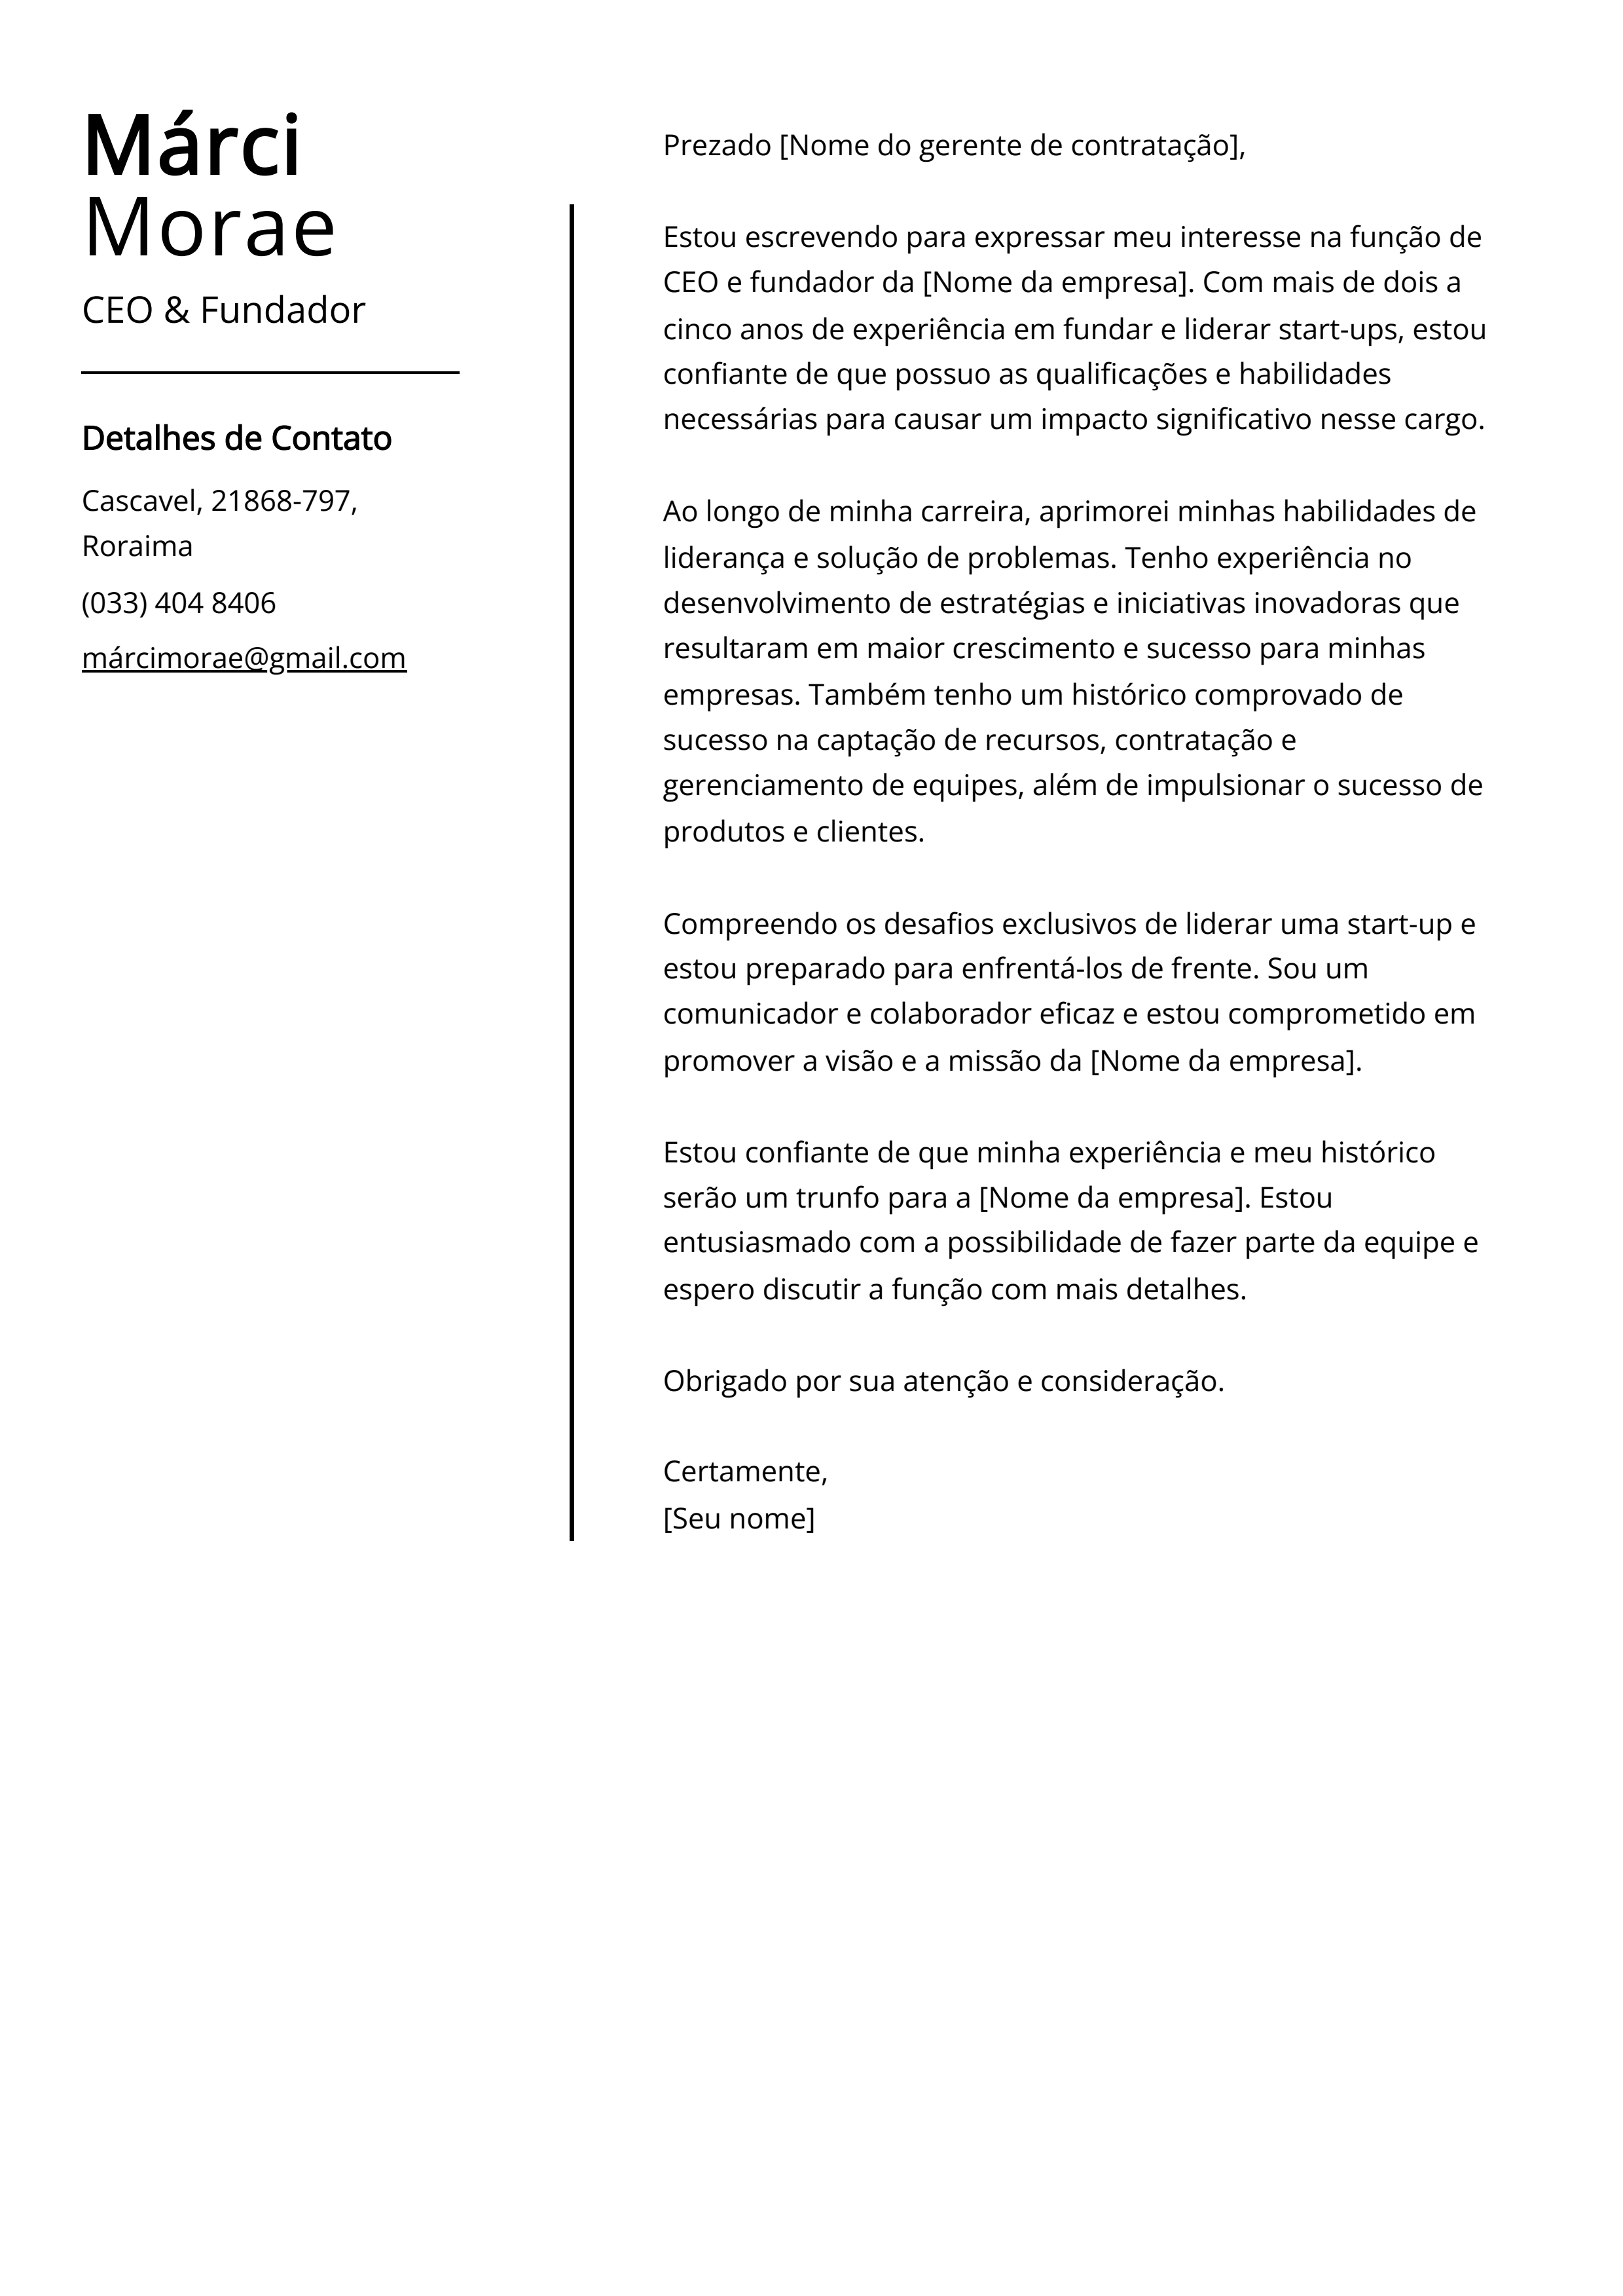 Exemplo de carta de apresentação de CEO e Fundador